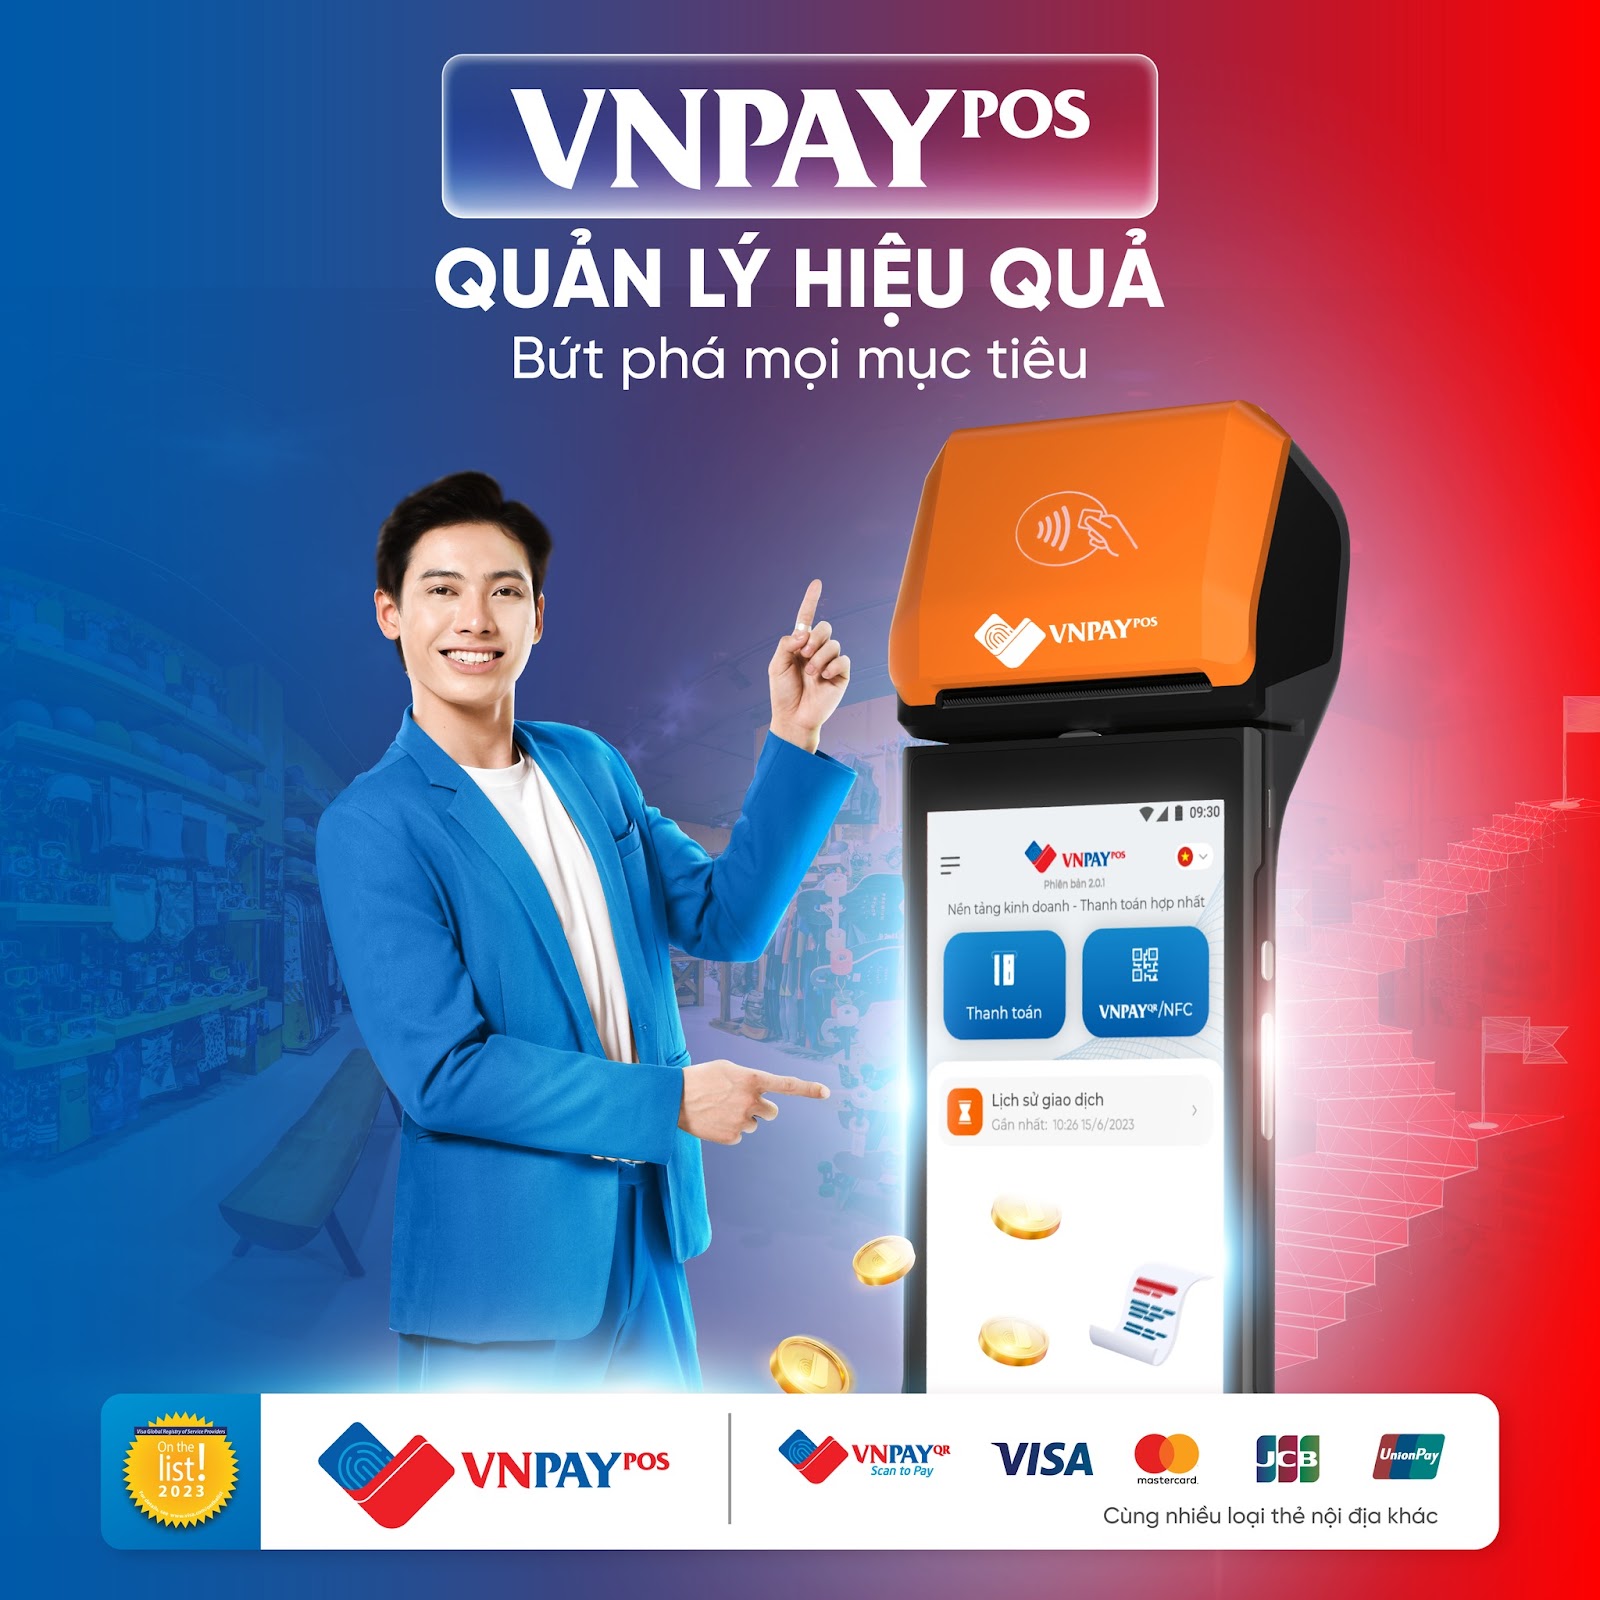 VNPAY-POS nâng cao chất lượng dịch vụ